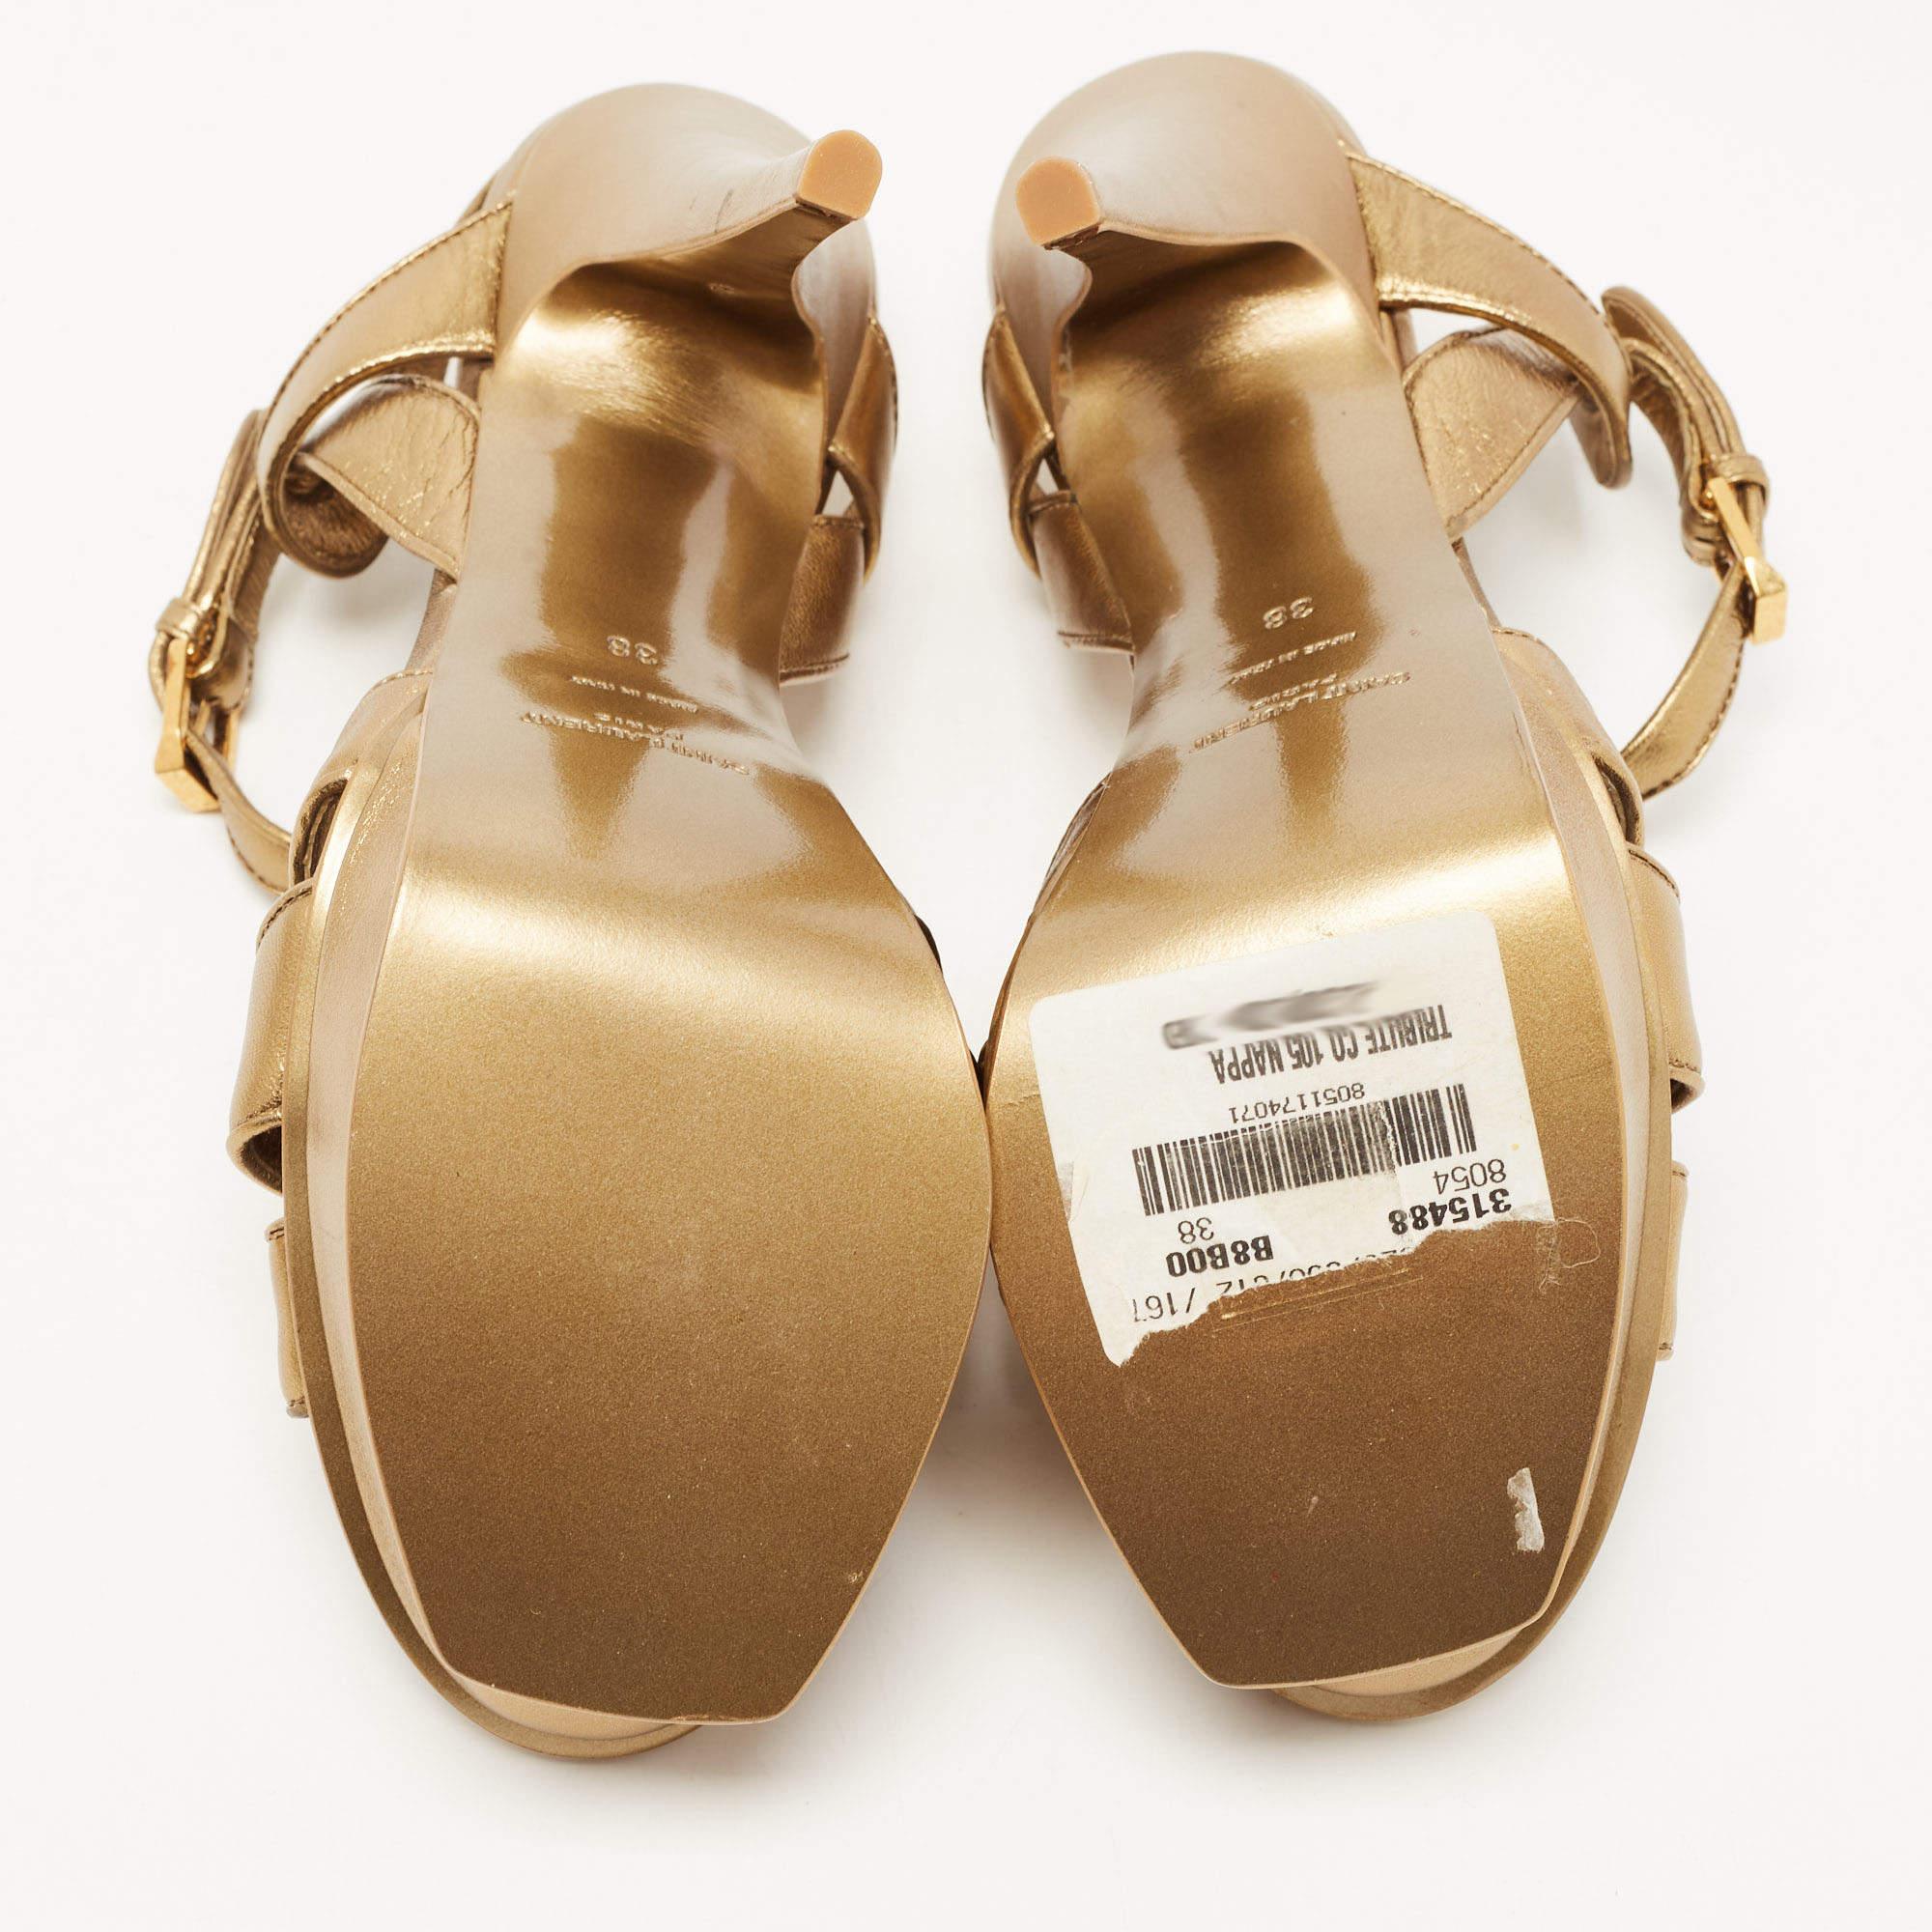 Saint Laurent Metallic Gold Leather Tribute Ankle Strap Platform Sandals Size 38 4